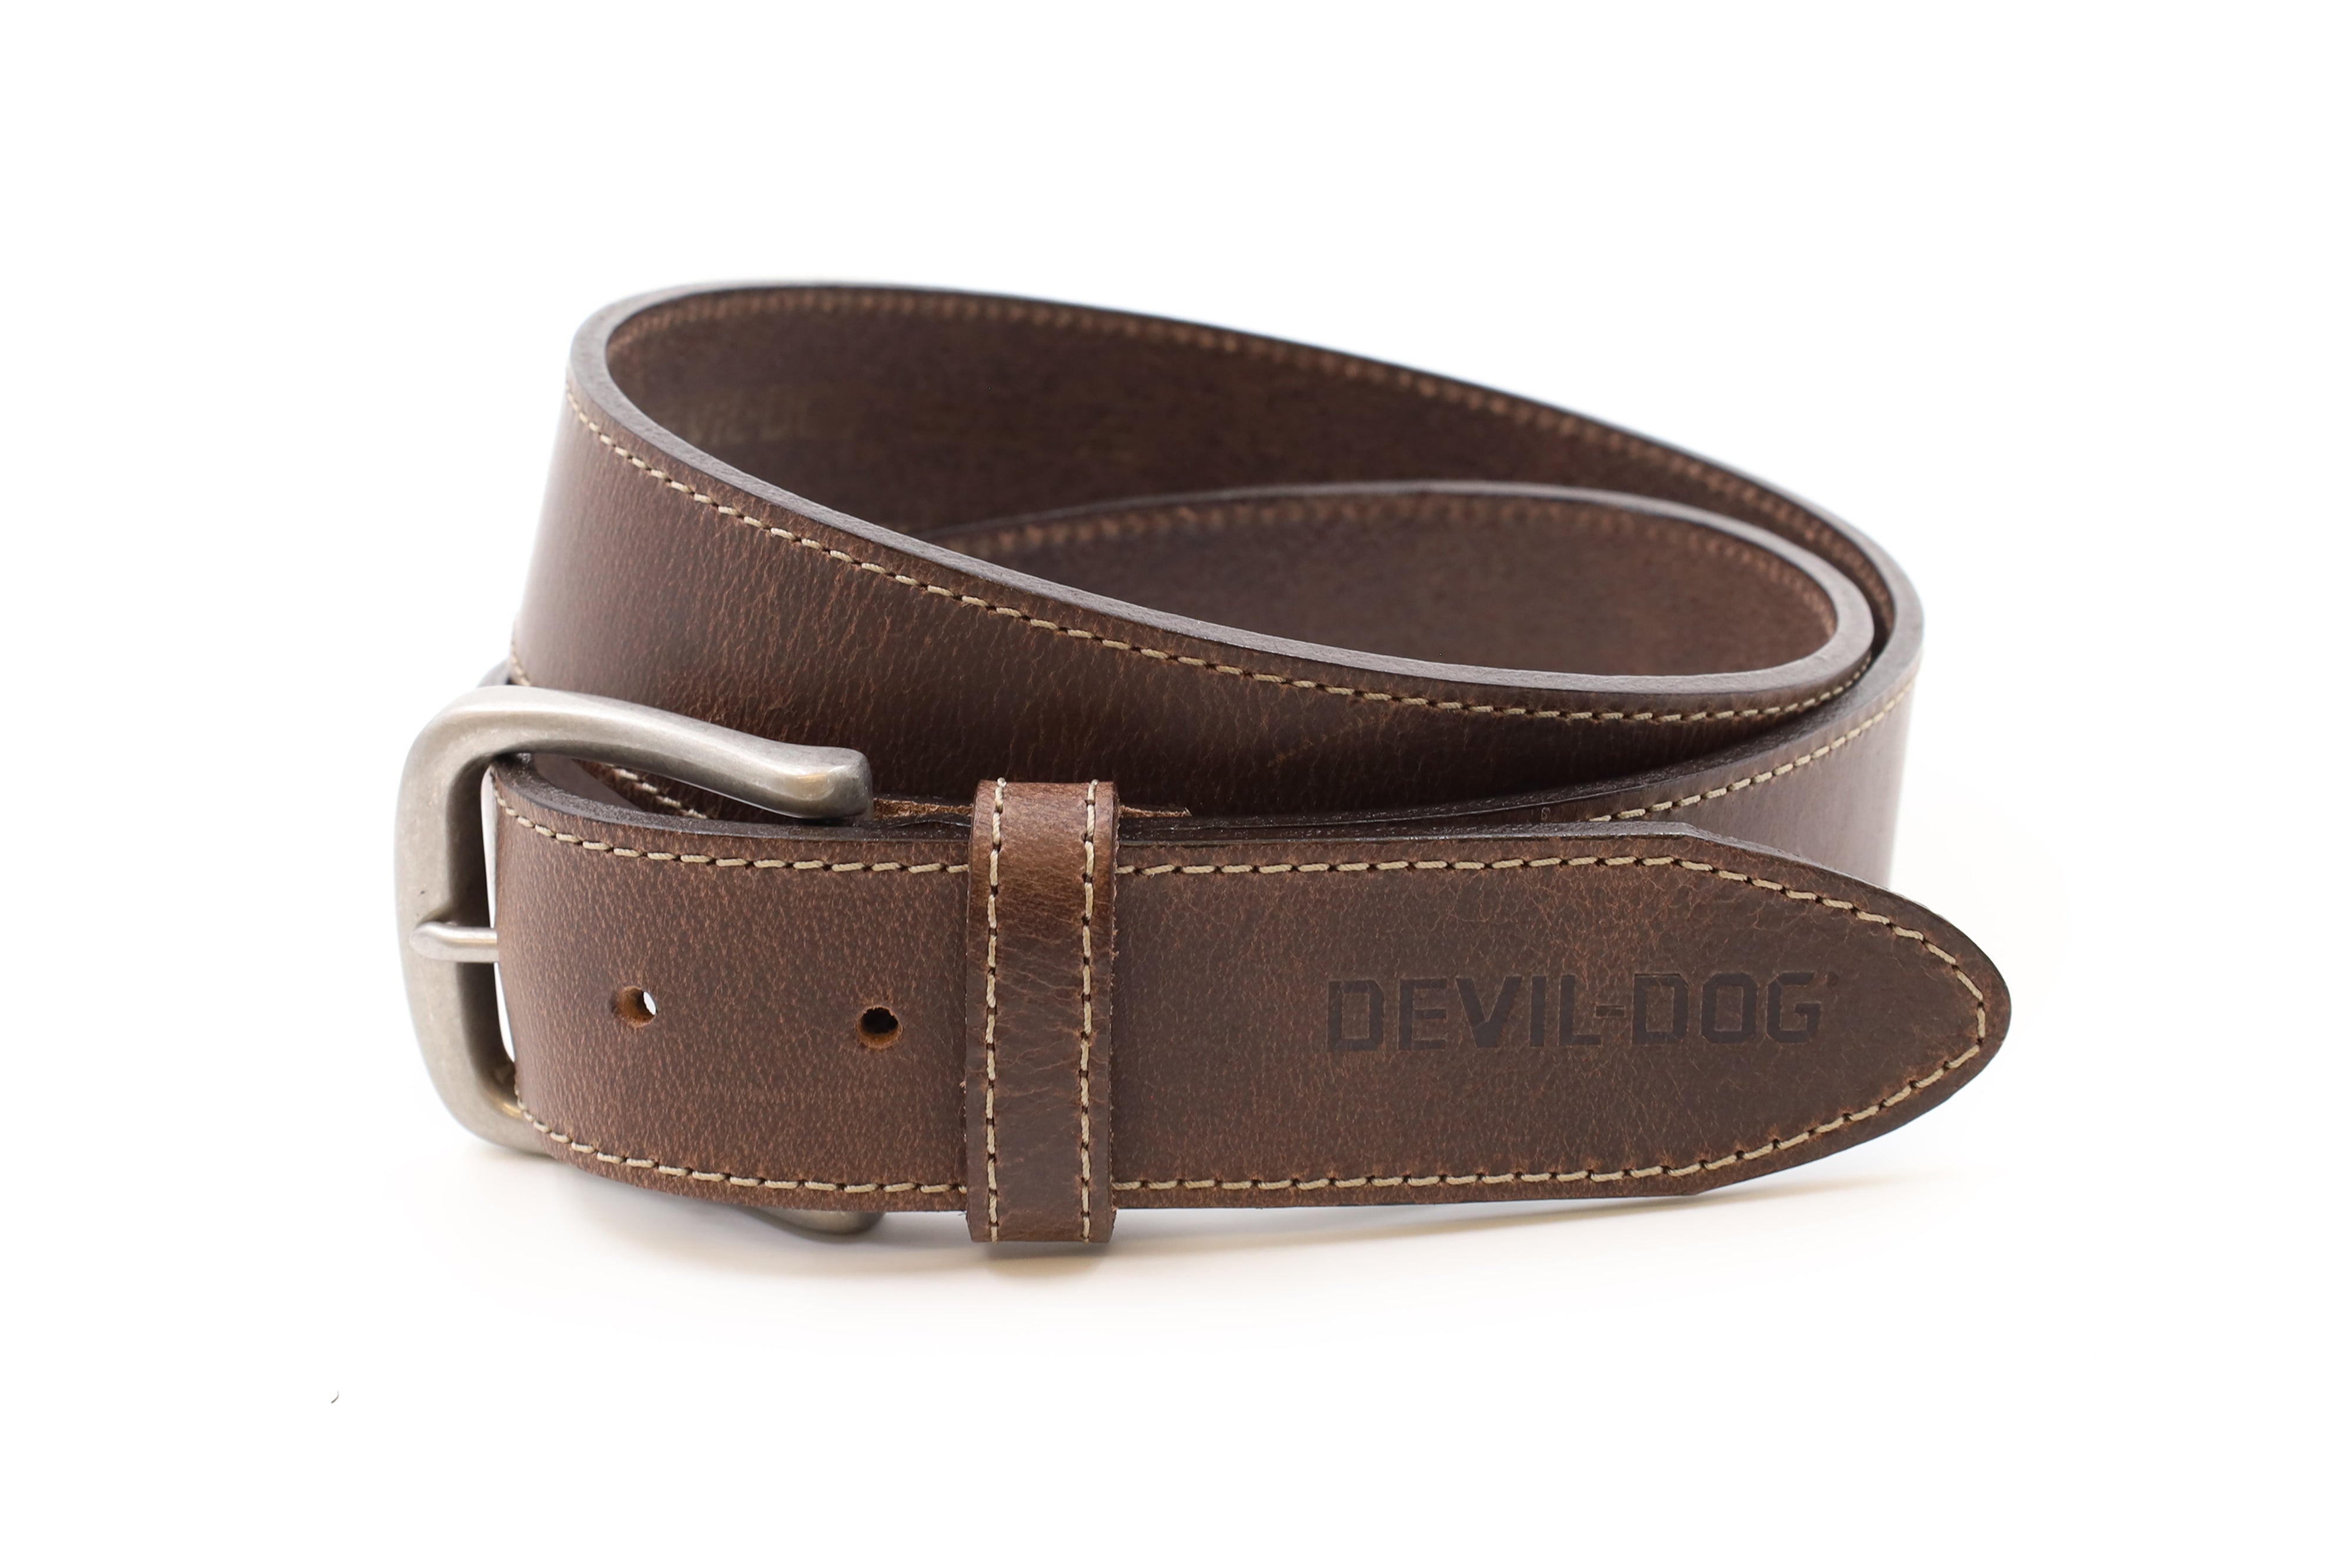 DEVIL-DOG® Leather Belt - Brown with Nickel Buckle – DEVIL-DOG Dungarees